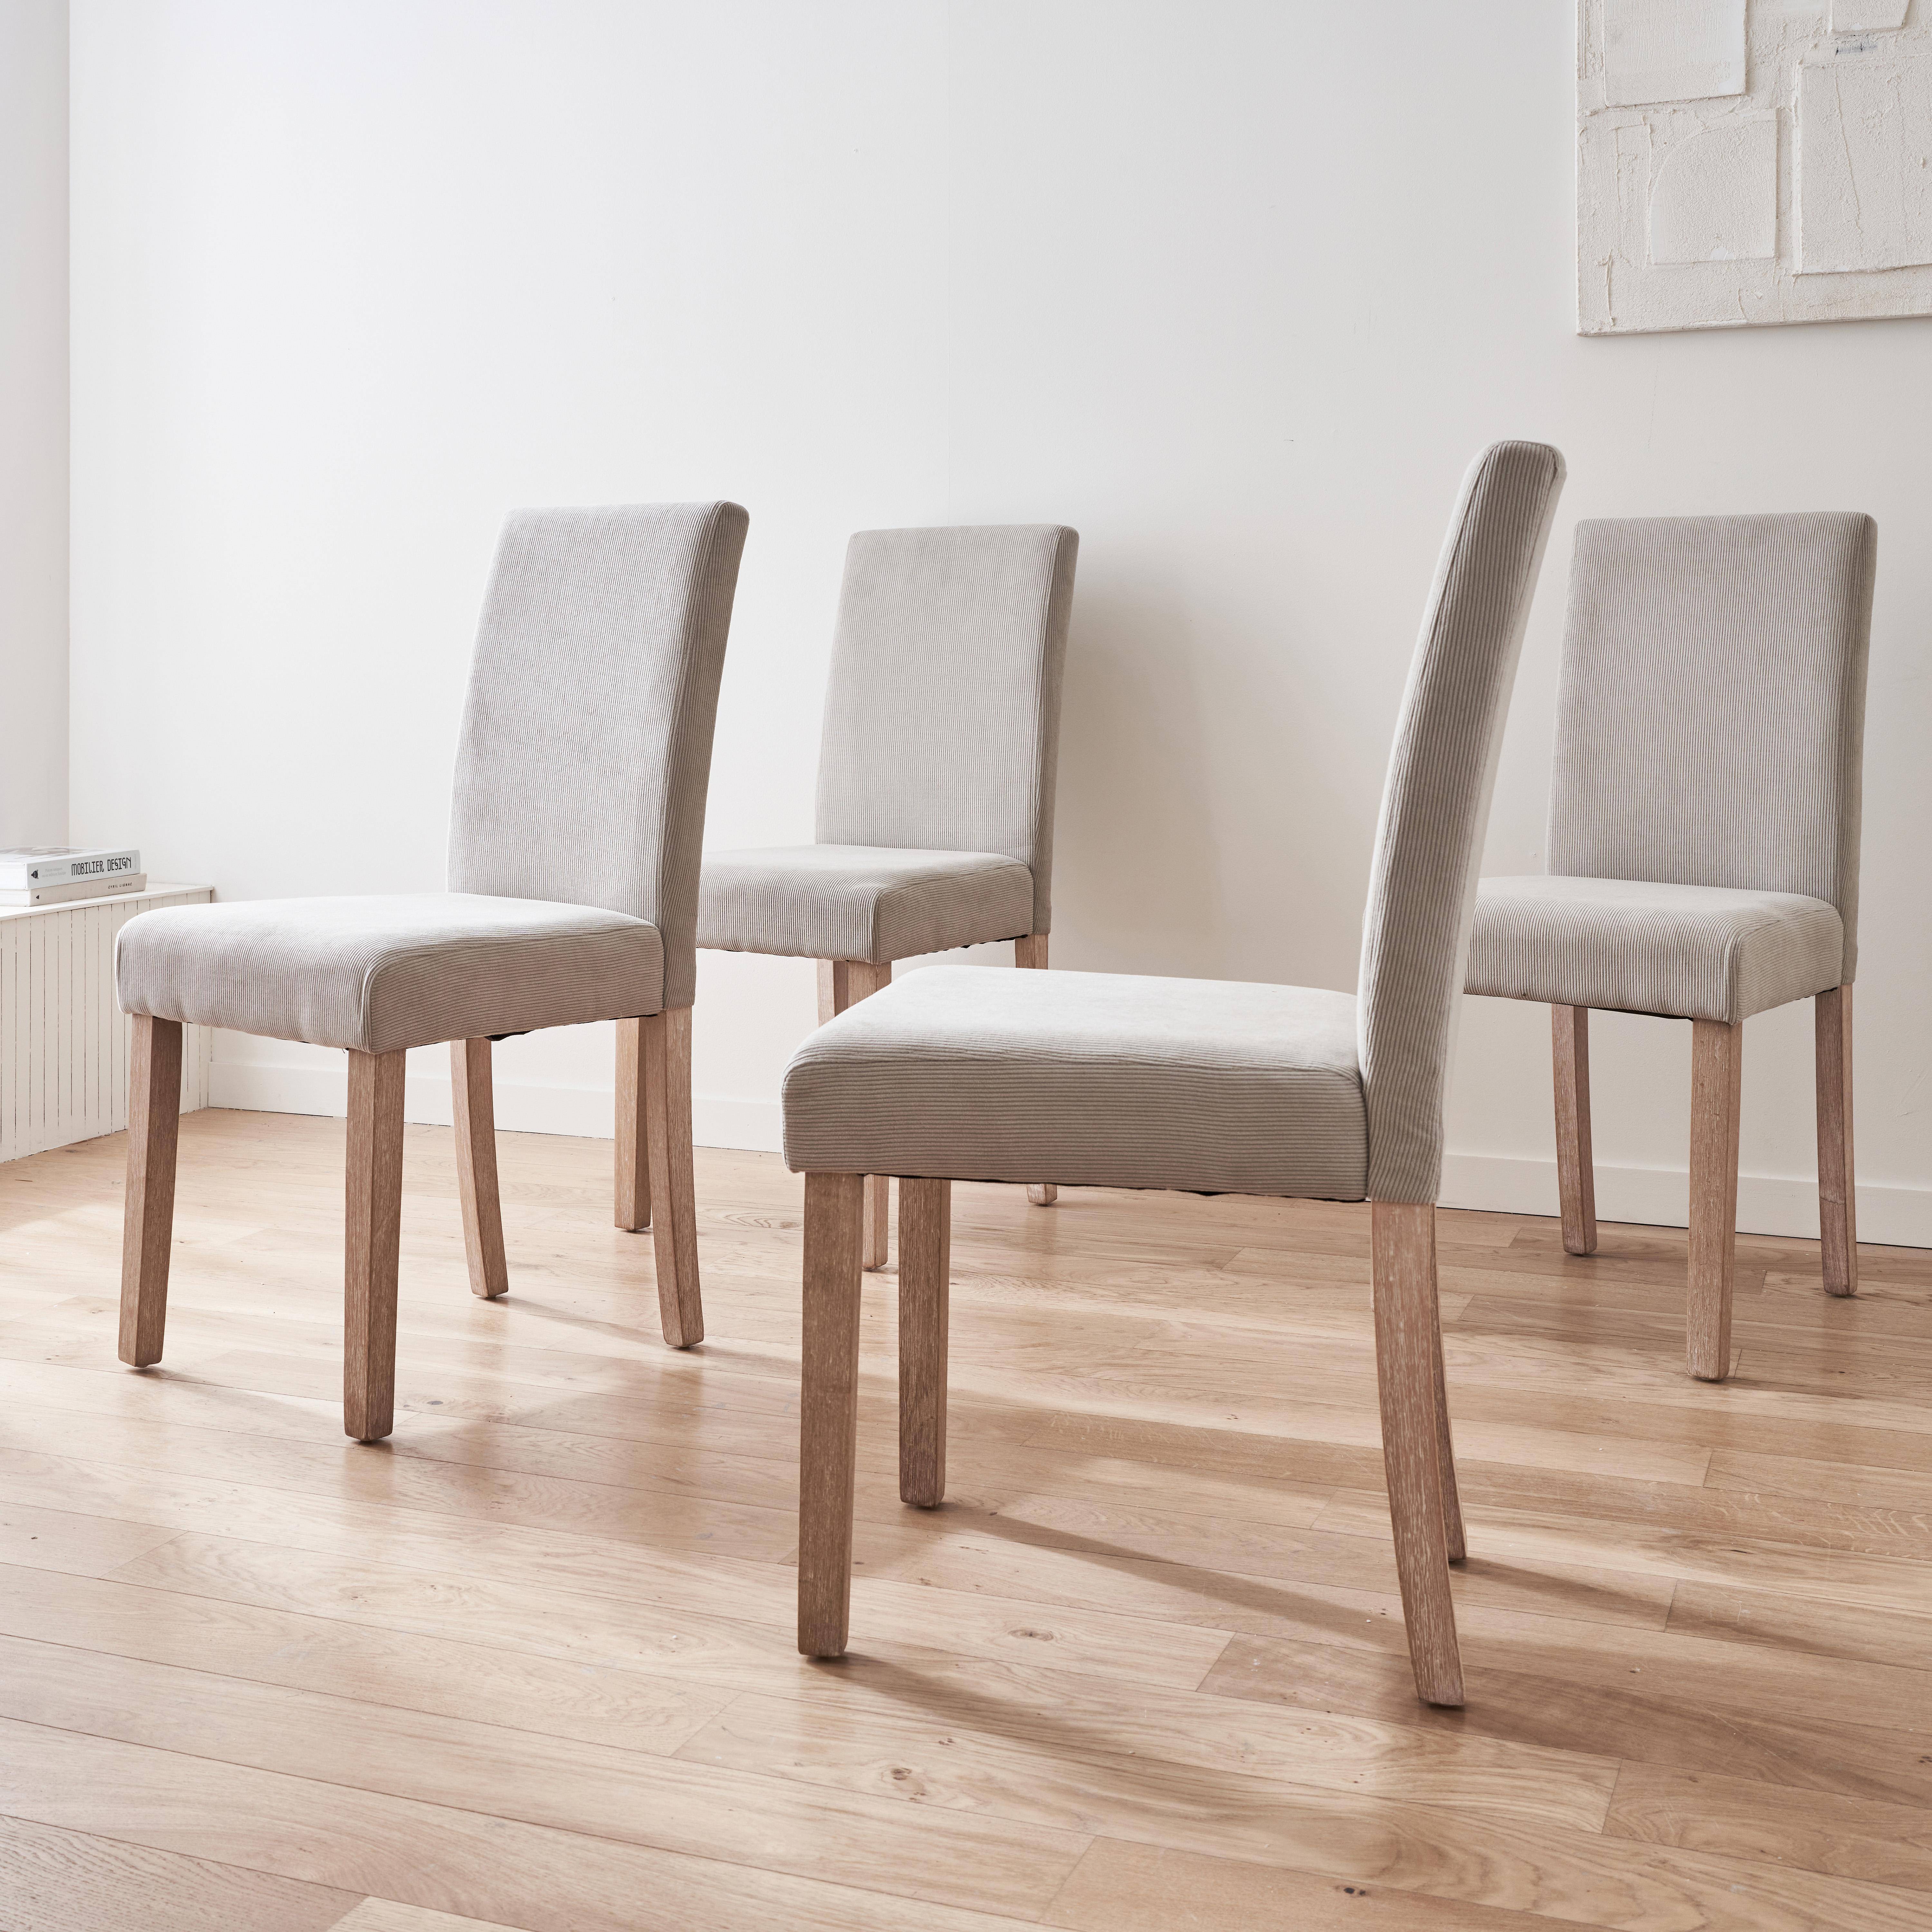 Set van 4 grijze corduroy stoelen, Rita, met witte poten van heveahout,sweeek,Photo2